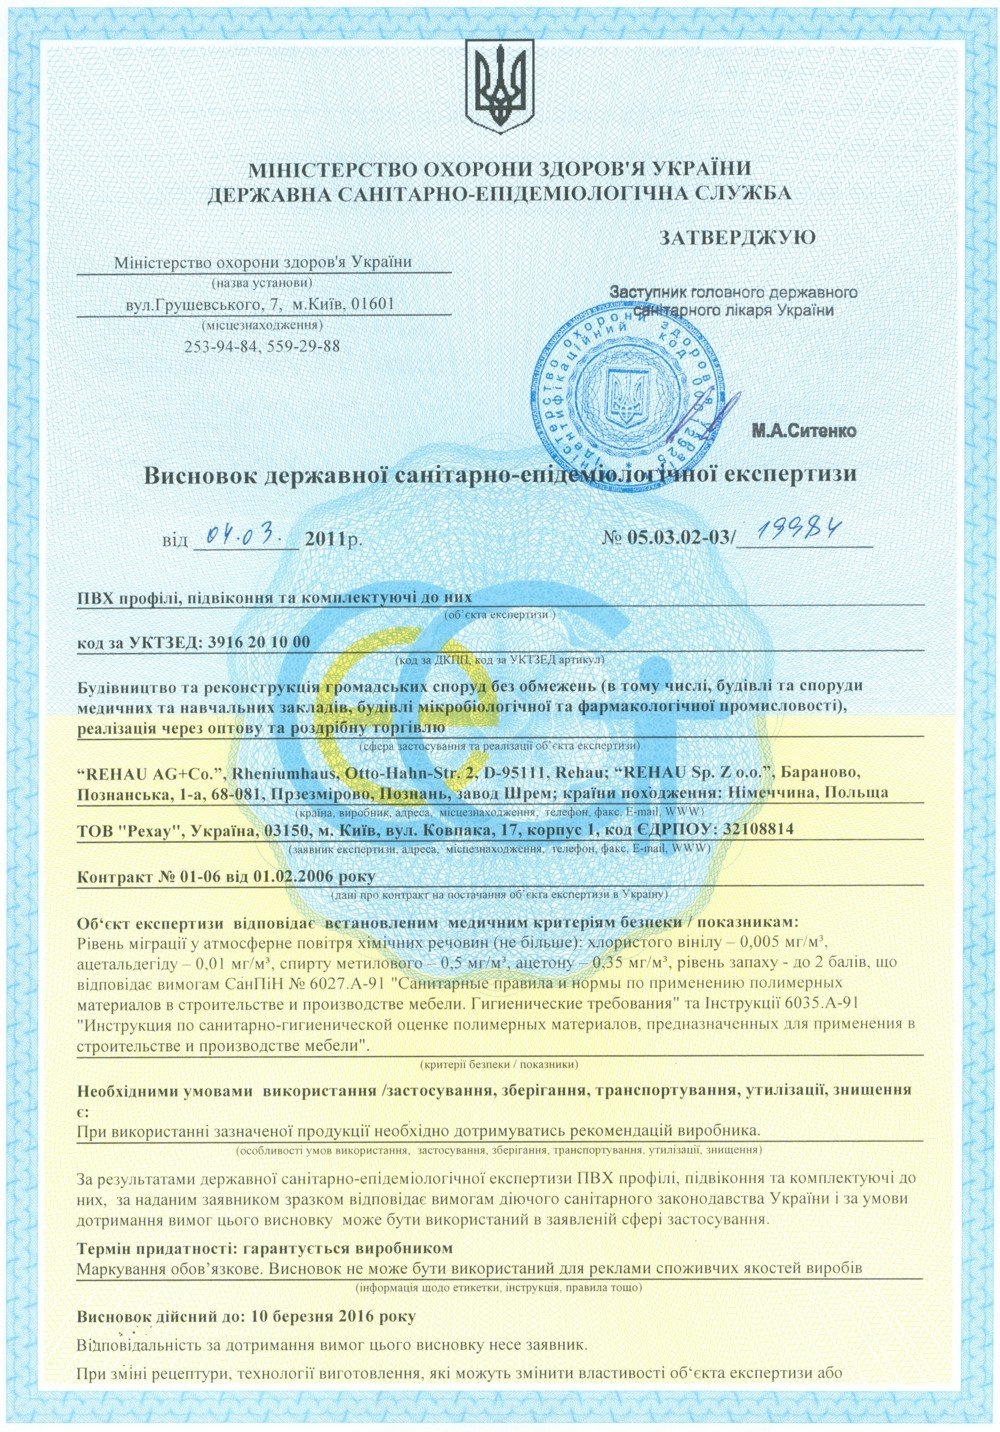 Сертифікат на вікна Rehau